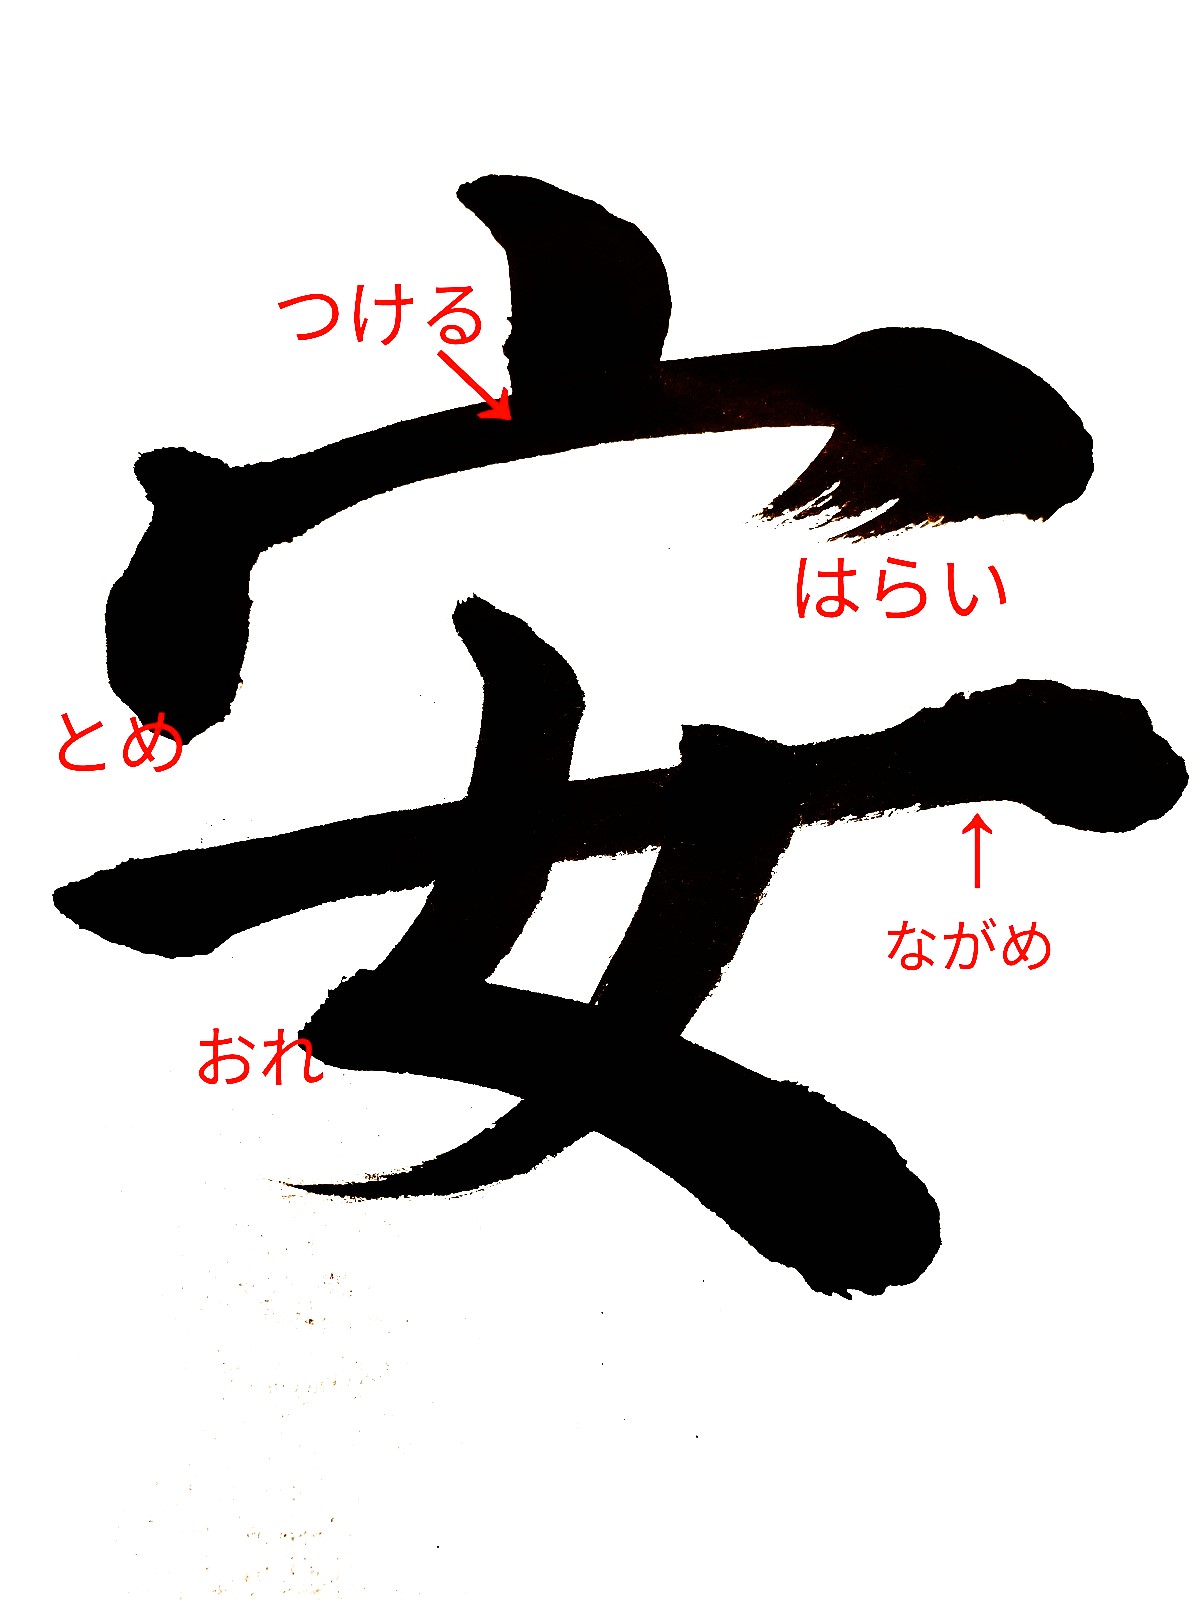 【安】決意表明で選ばれやすい漢字「安」の書道書き方と語源